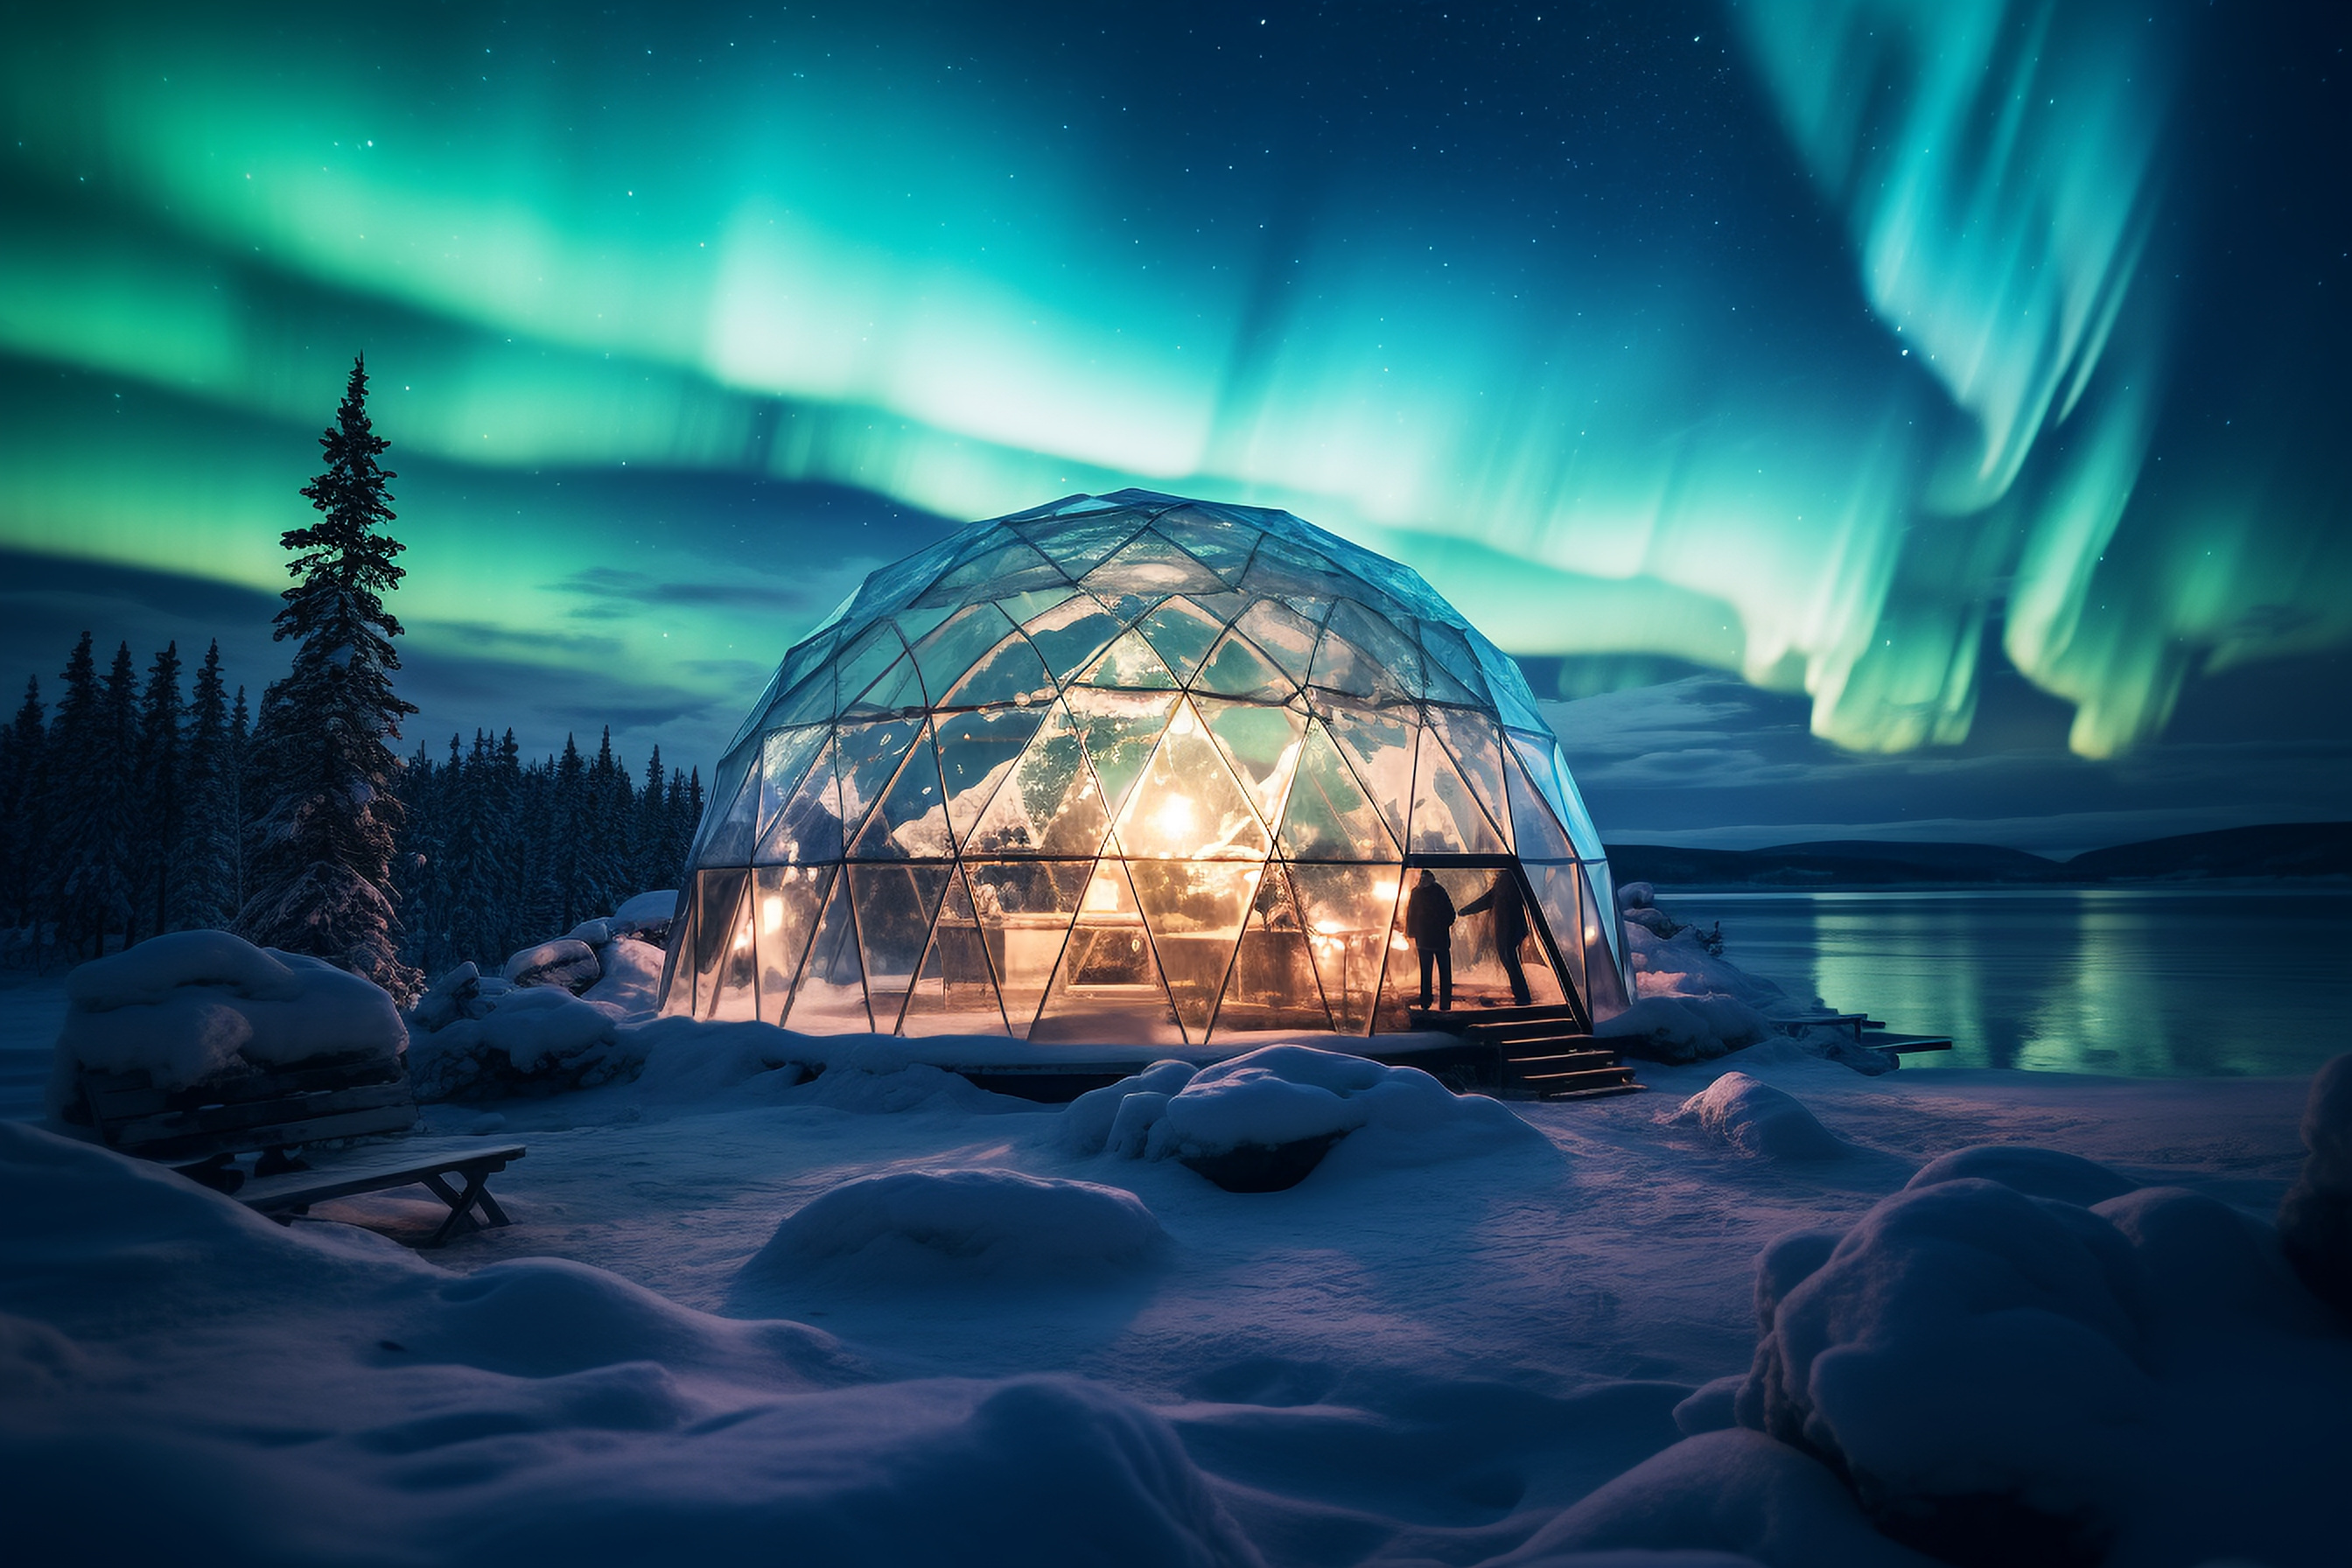 芬兰·冰岛·希尔科内斯12日冬季追光之旅